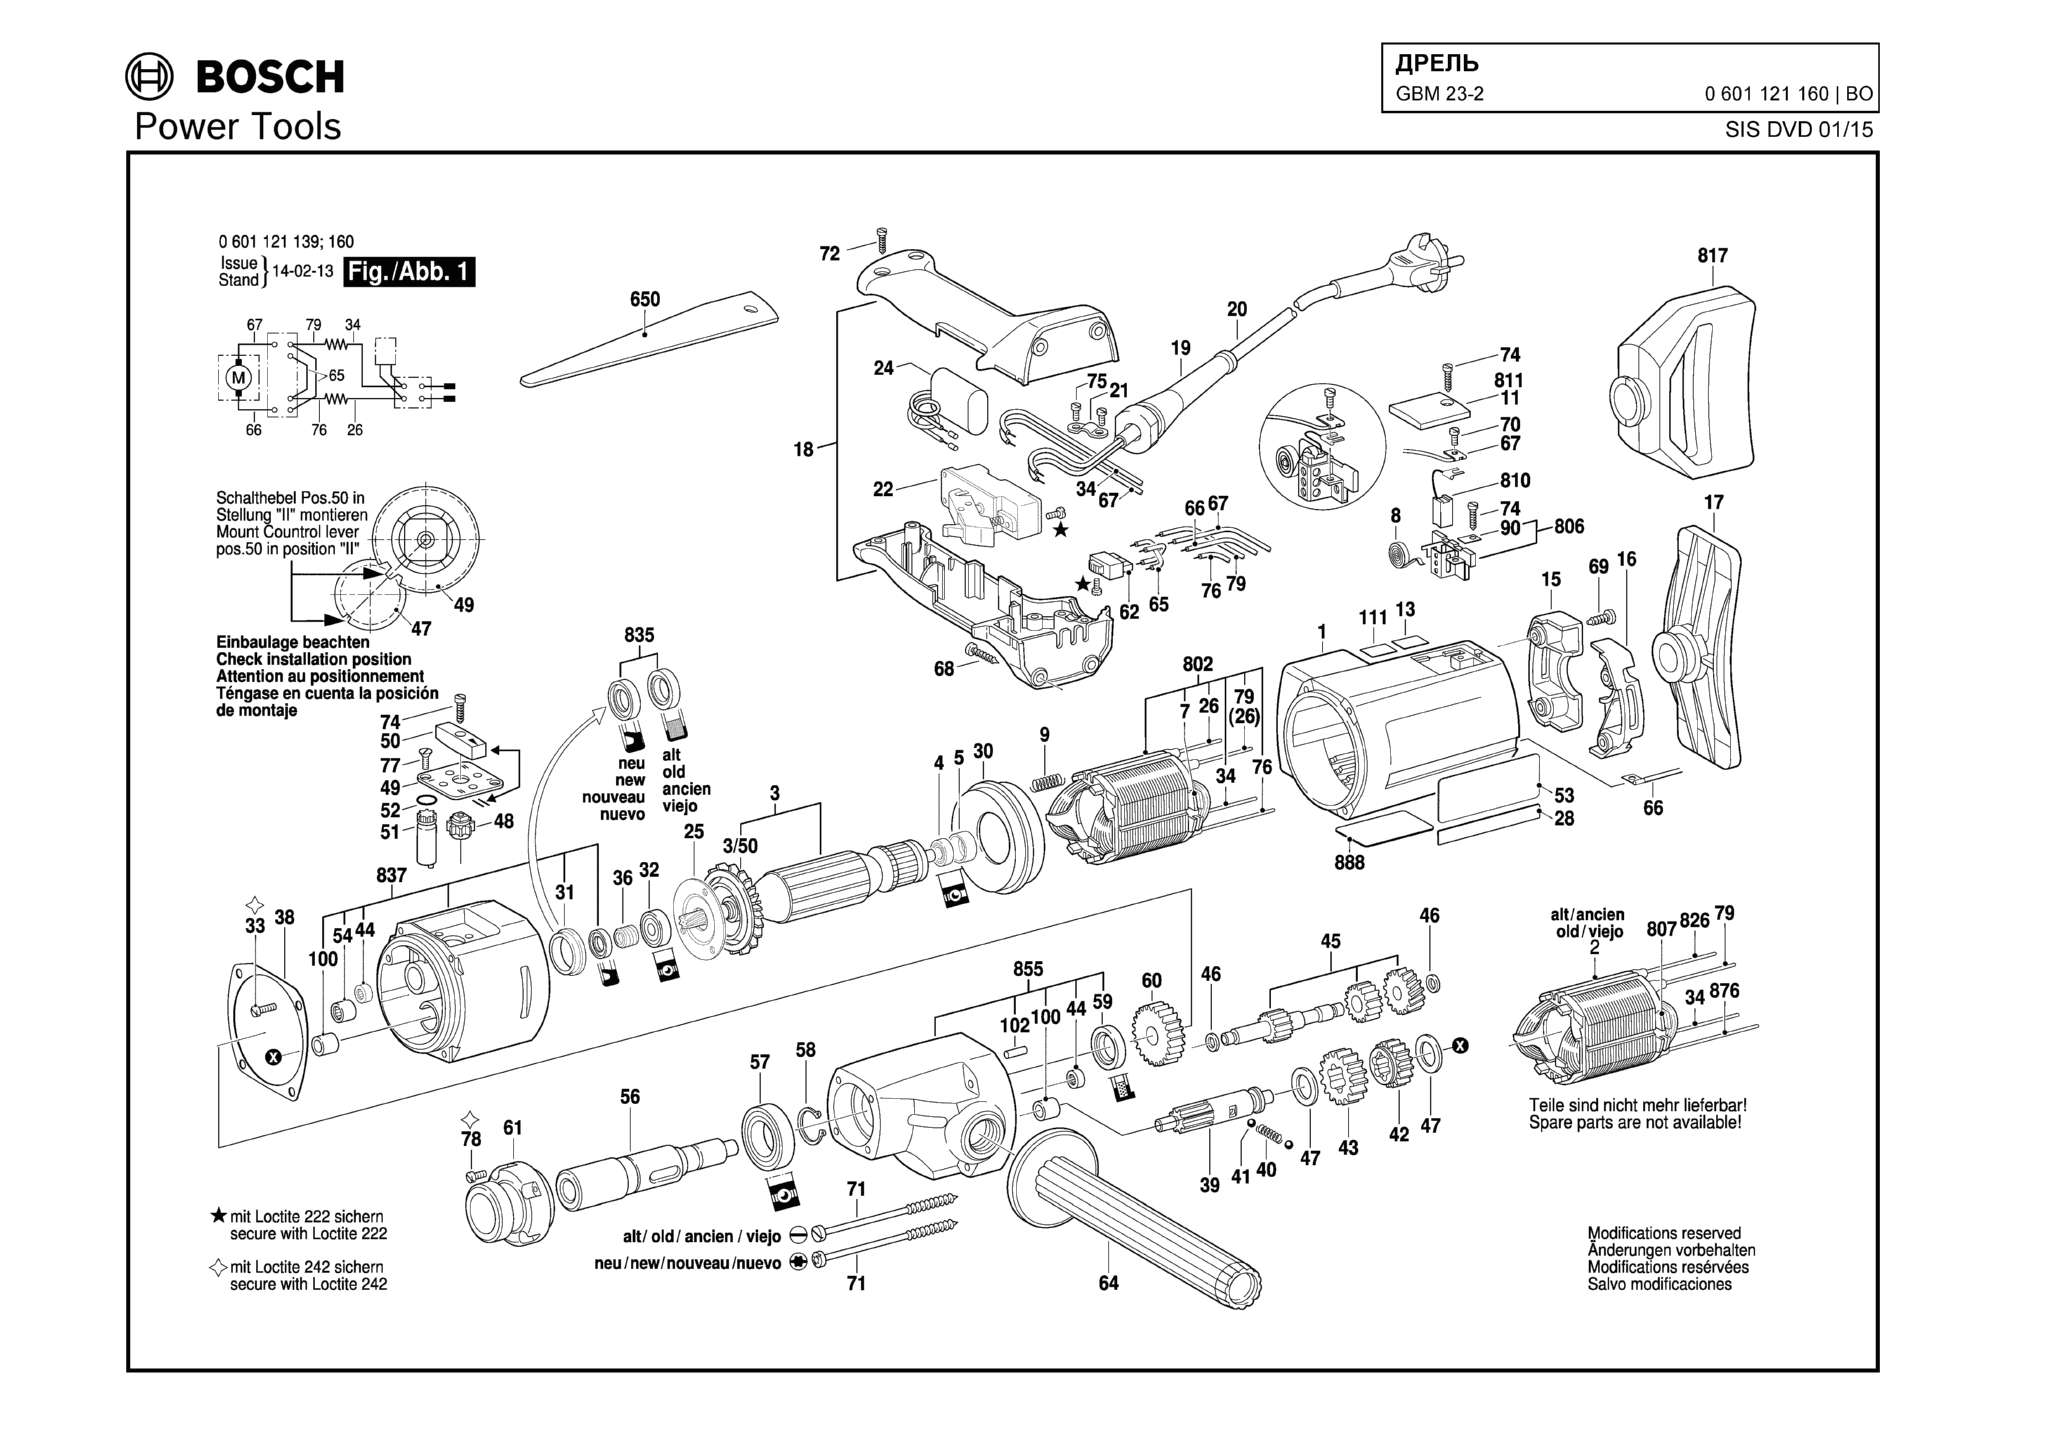 Запчасти, схема и деталировка Bosch GBM 23-2 (ТИП 0601121160)